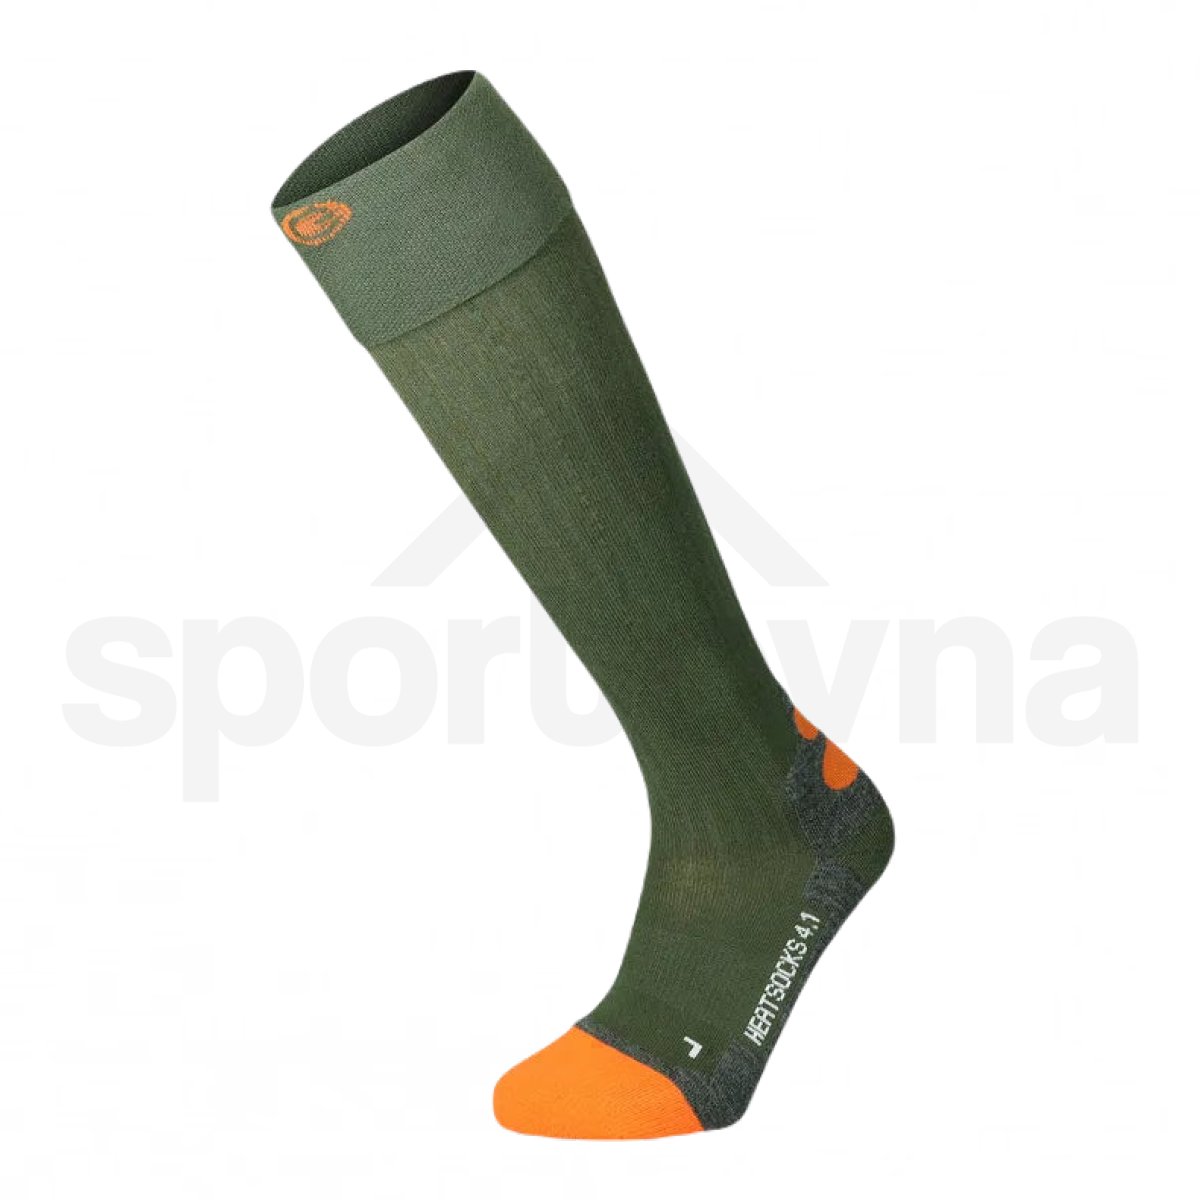 Ponožky vyhřívané Lenz Heat Sock 4.1 Toe Cap U - zelená/oranžová (bez baterie)